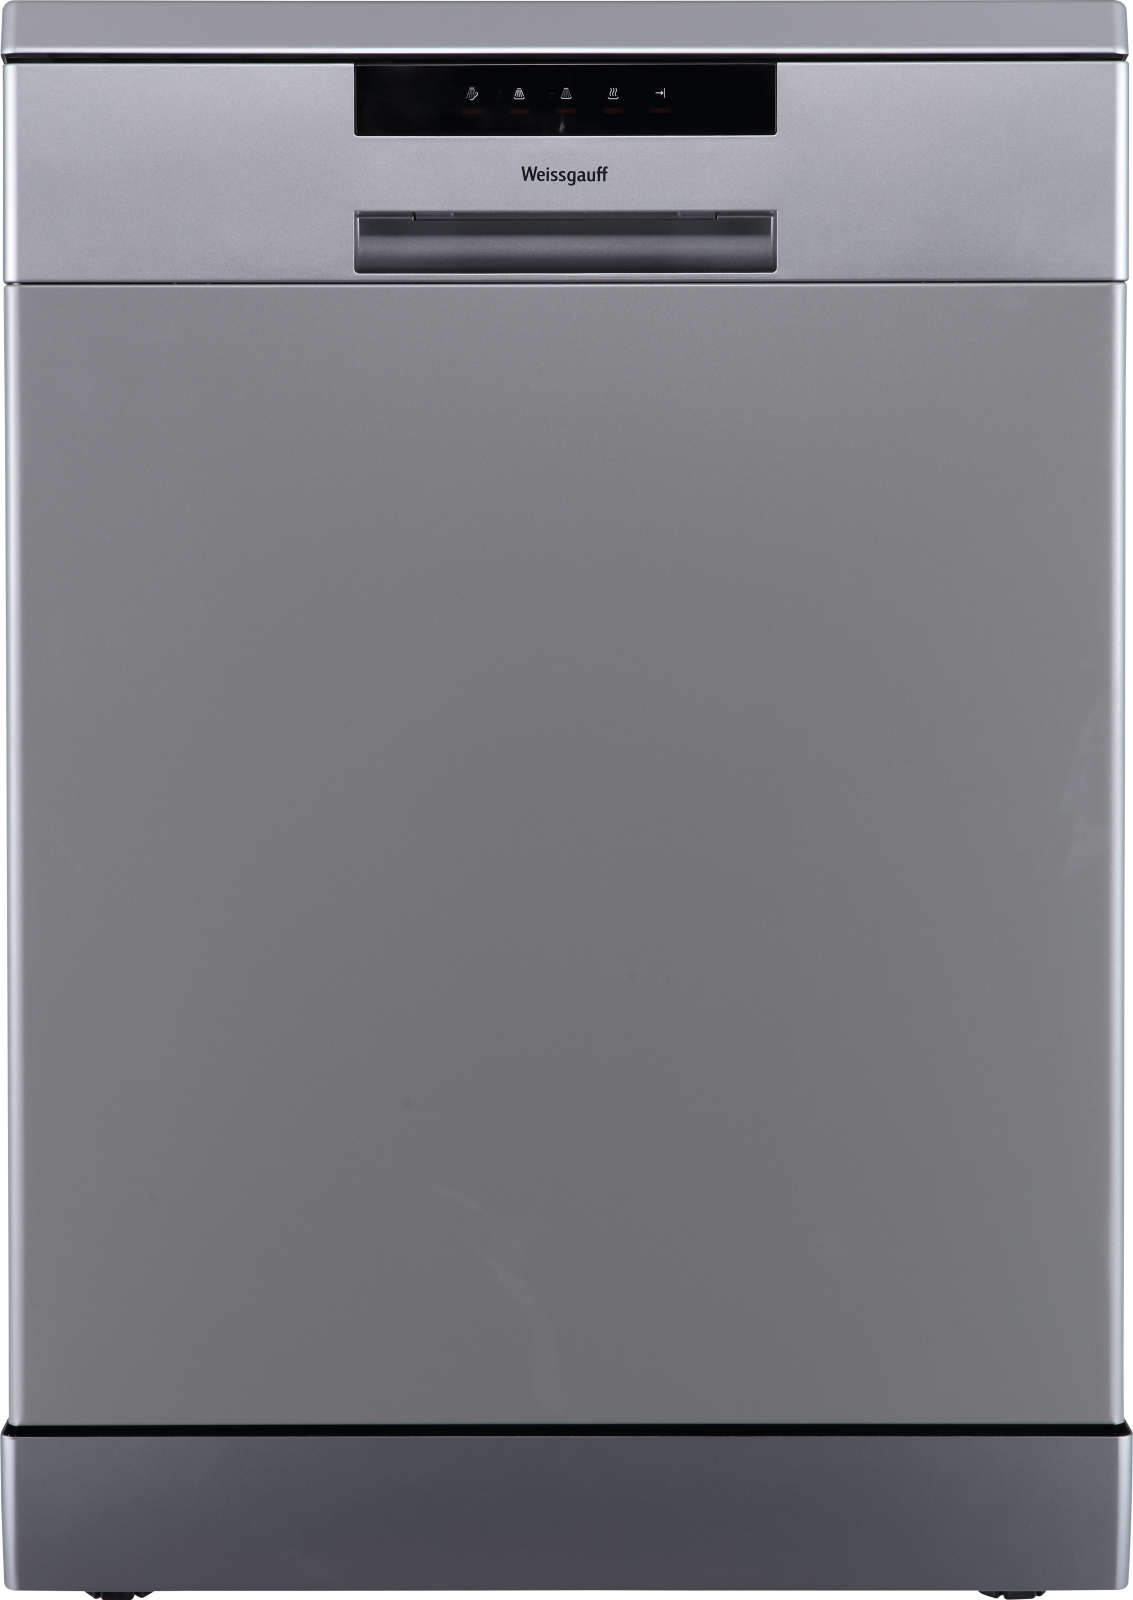 Посудомоечная машина Weissgauff DW 6013 Inox серебристый посудомоечная машина weissgauff tdw 4006 d